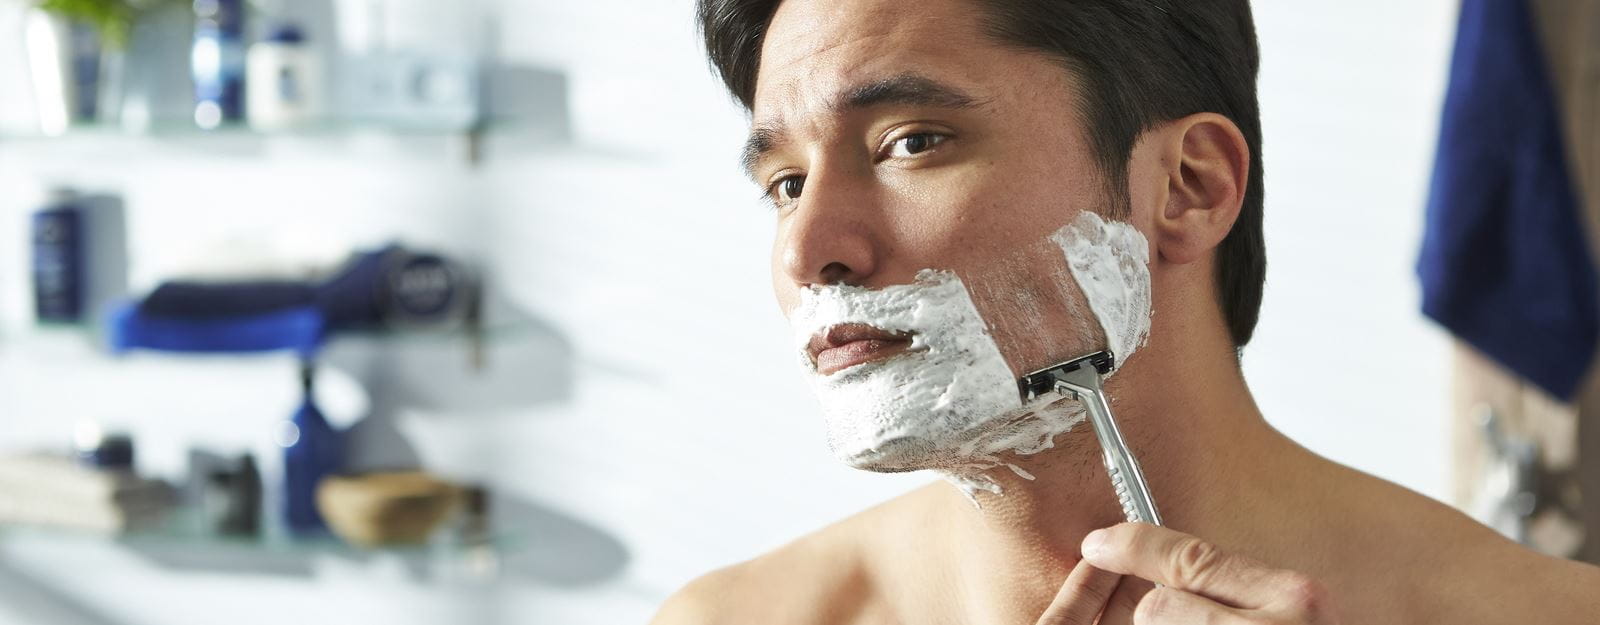 Shaving solutions